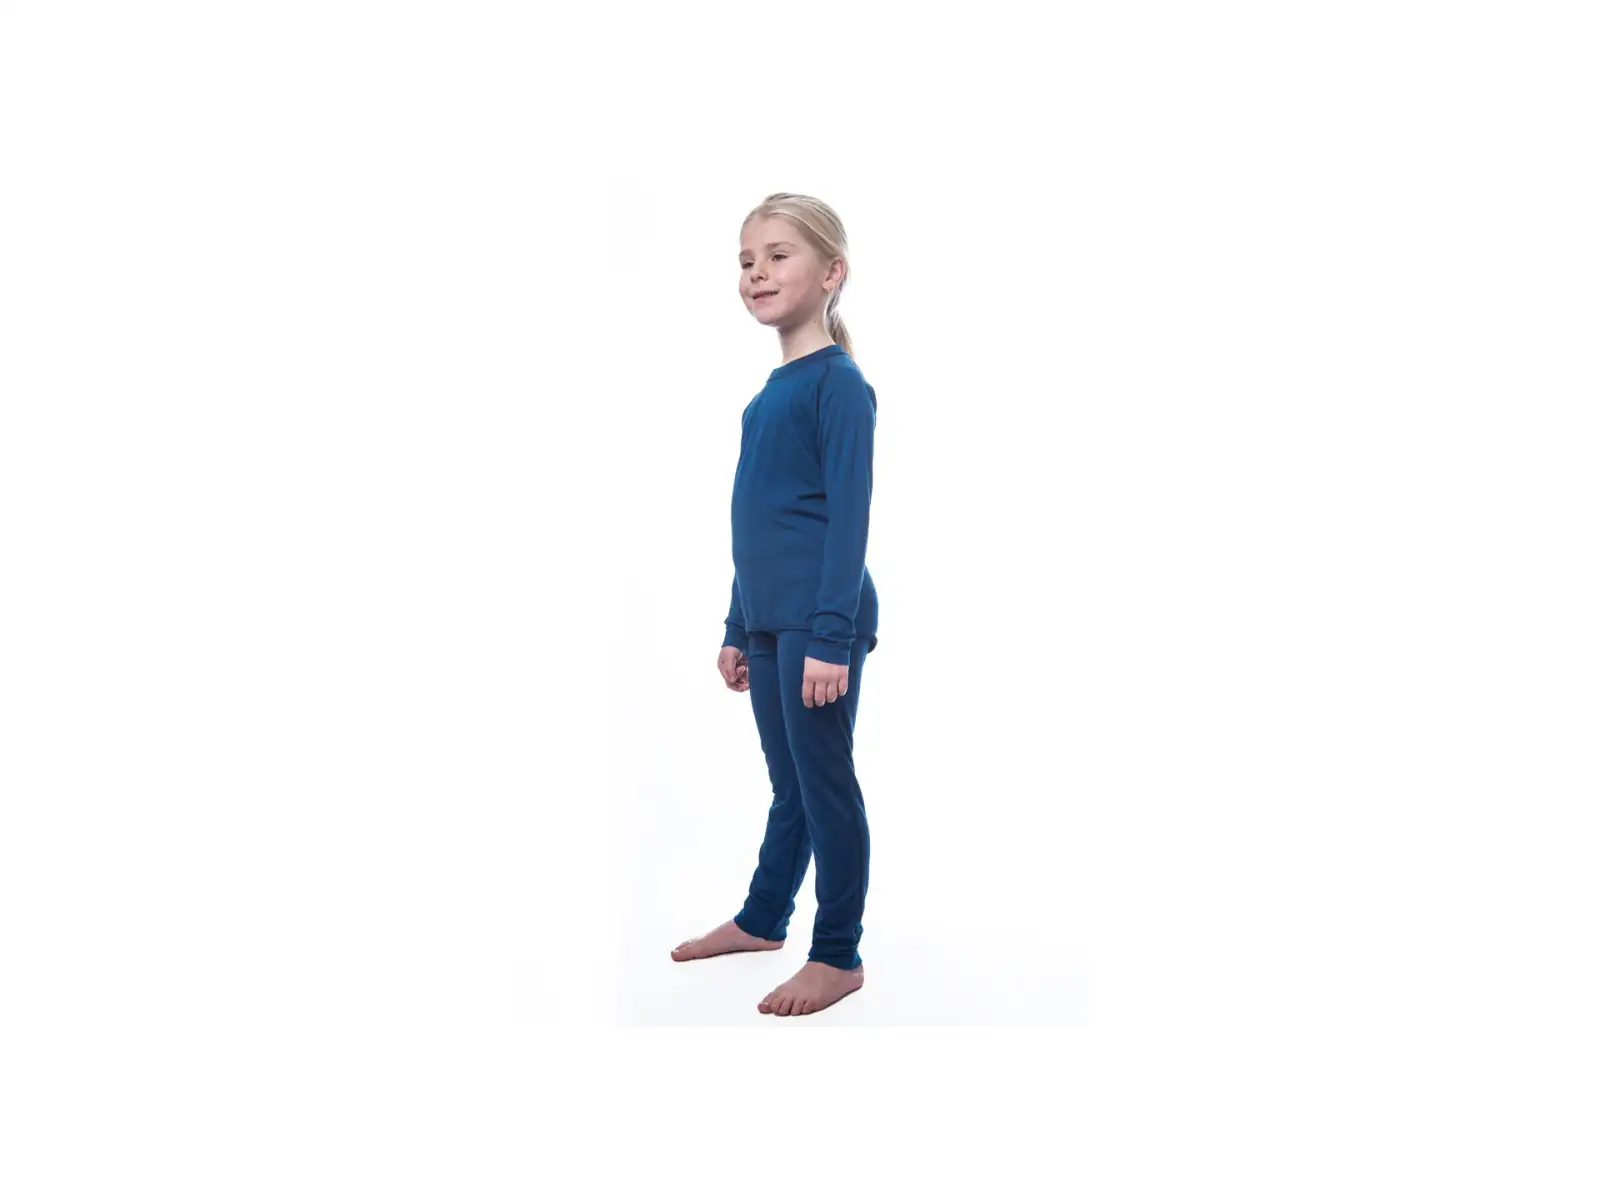 Sensor Merino Air dětský set triko dlouhý rukáv + spodní kalhoty tmavě modrá